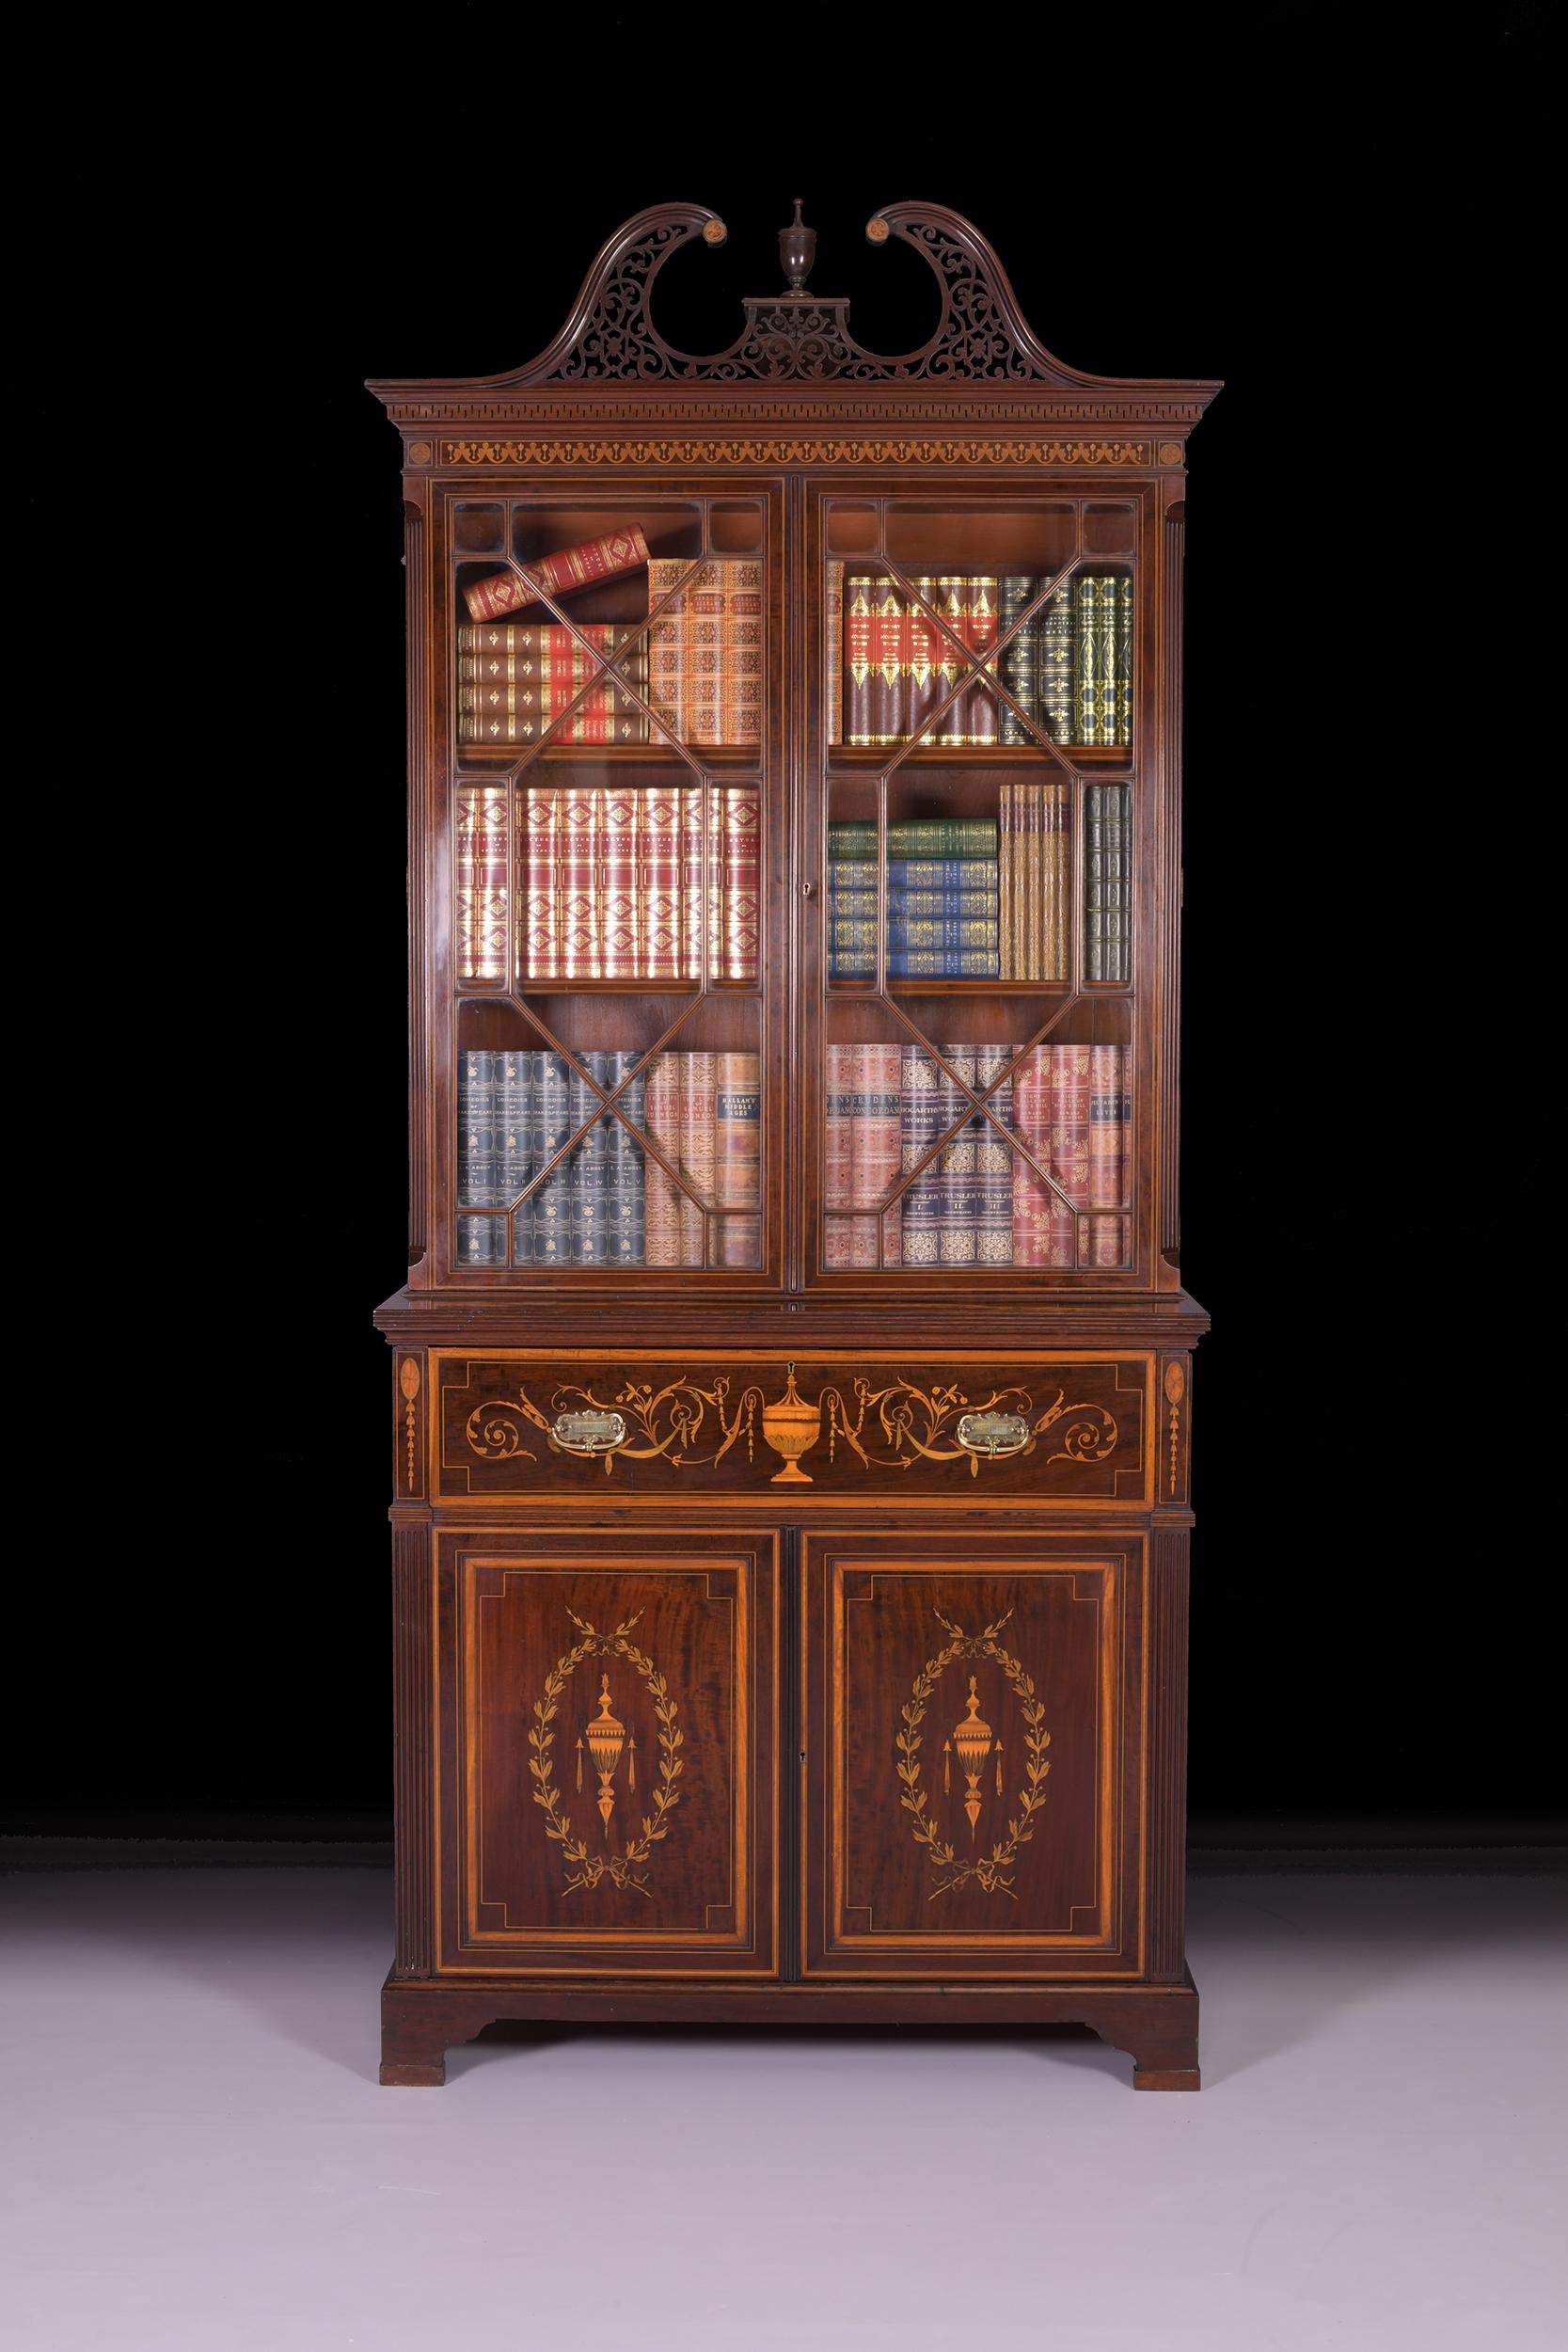 Ein außergewöhnliches Sekretär-Bücherregal von Edwards & Roberts aus dem späten 19. Jahrhundert, dessen oberer Teil mit einem durchbrochenen Schwanenhals-Giebel mit griechischem Schlüssel versehen ist. Die beiden verglasten Astragal-Türen lassen